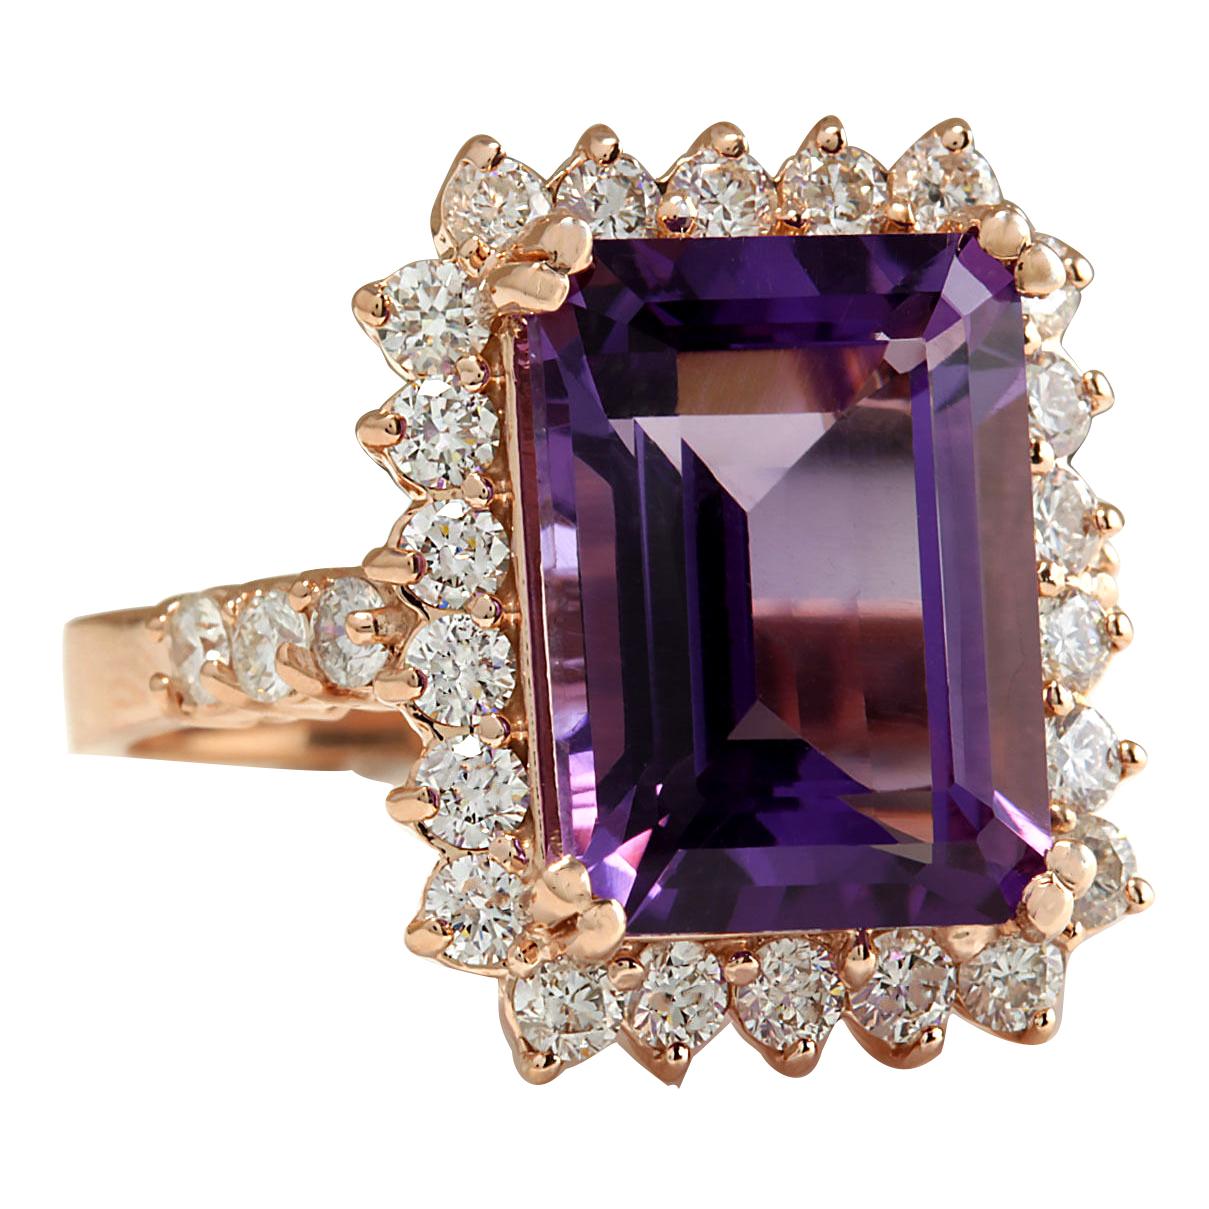 8.07 Carat Natural Amethyst 14 Karat Rose Gold Diamond Ring
Stamped: 14K Rose Gold
Total Ring Weight: 7.5 Grams
Total Natural Amethyst Weight is 6.77 Carat (Measures: 14.00x10.00 mm)
Color: Purple
Total Natural Diamond Weight is 1.30 Carat
Color: